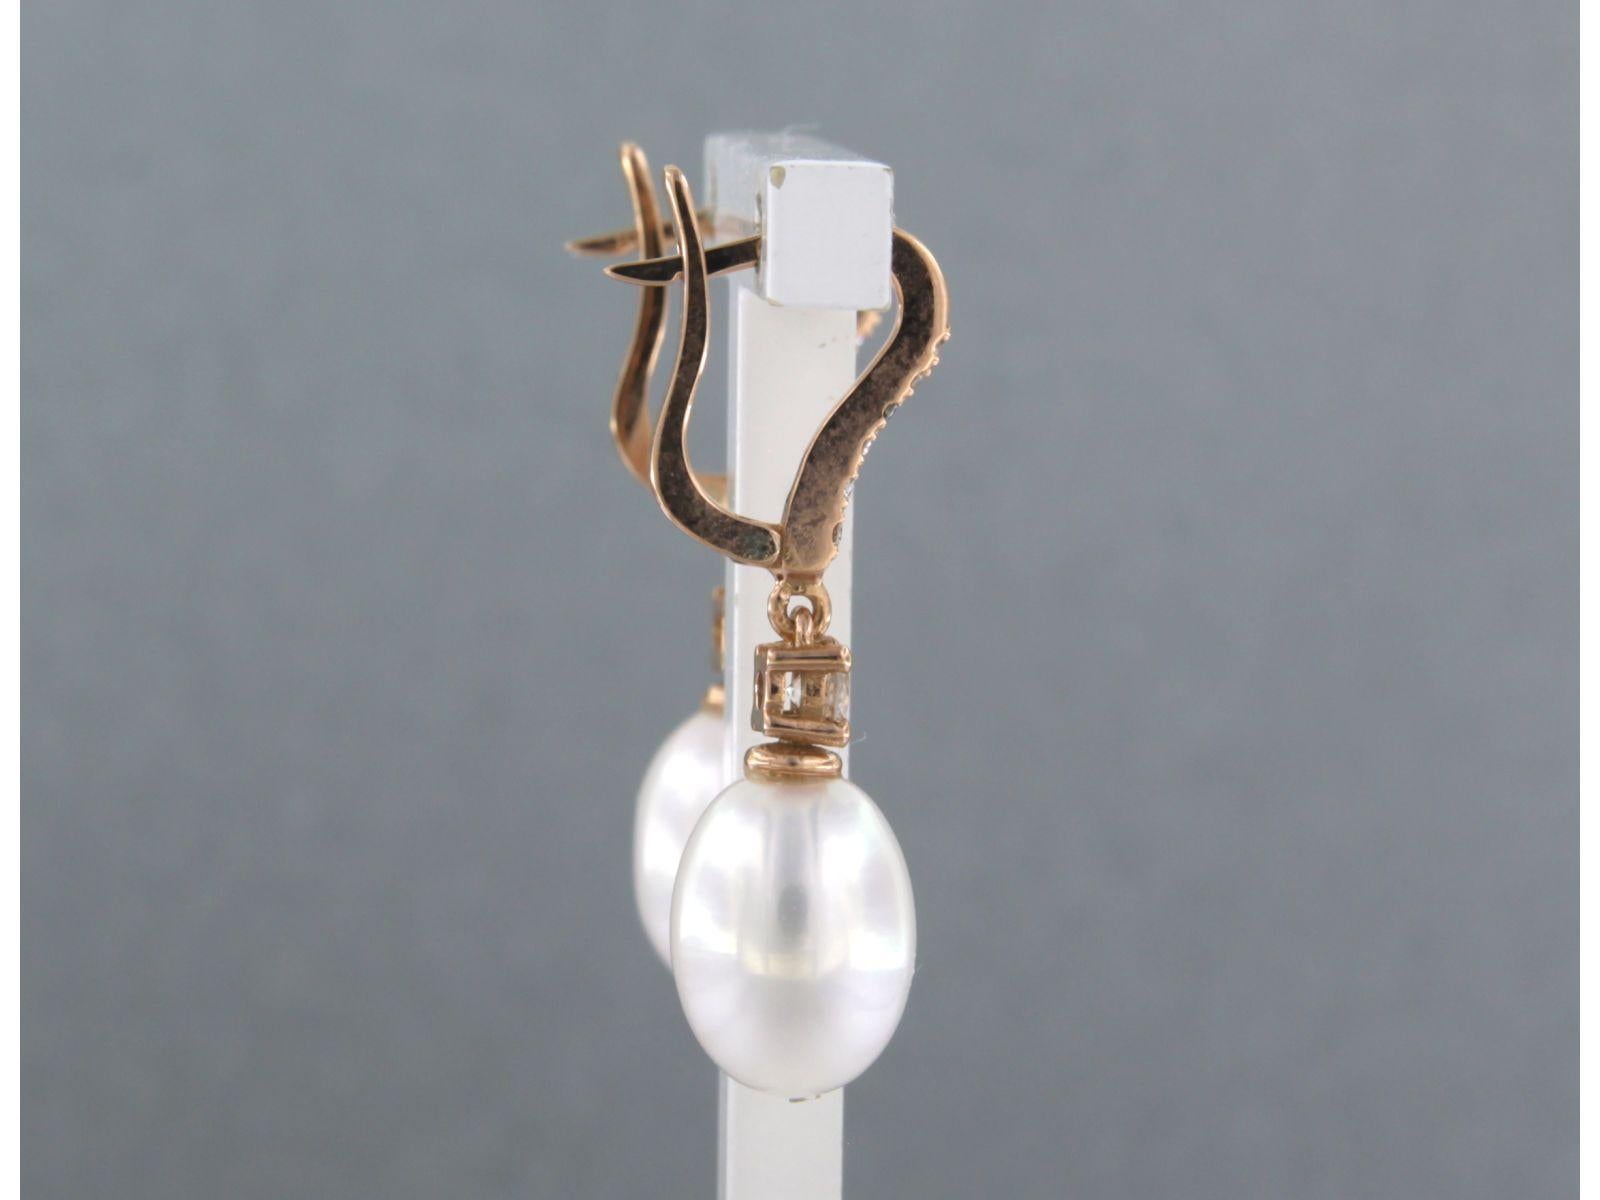 Ohrringe aus 18 kt Roségold mit Perle und Diamanten im Brillantschliff von bis zu 0,32 ct - F/G - VS/SI

detaillierte Beschreibung:

die Größe des Ohrrings ist 2,8 cm lang und 7,9 mm breit

Gewicht: 4,2 g

beschäftigt mit:

- 2 x 1,1 cm x 8,0 mm